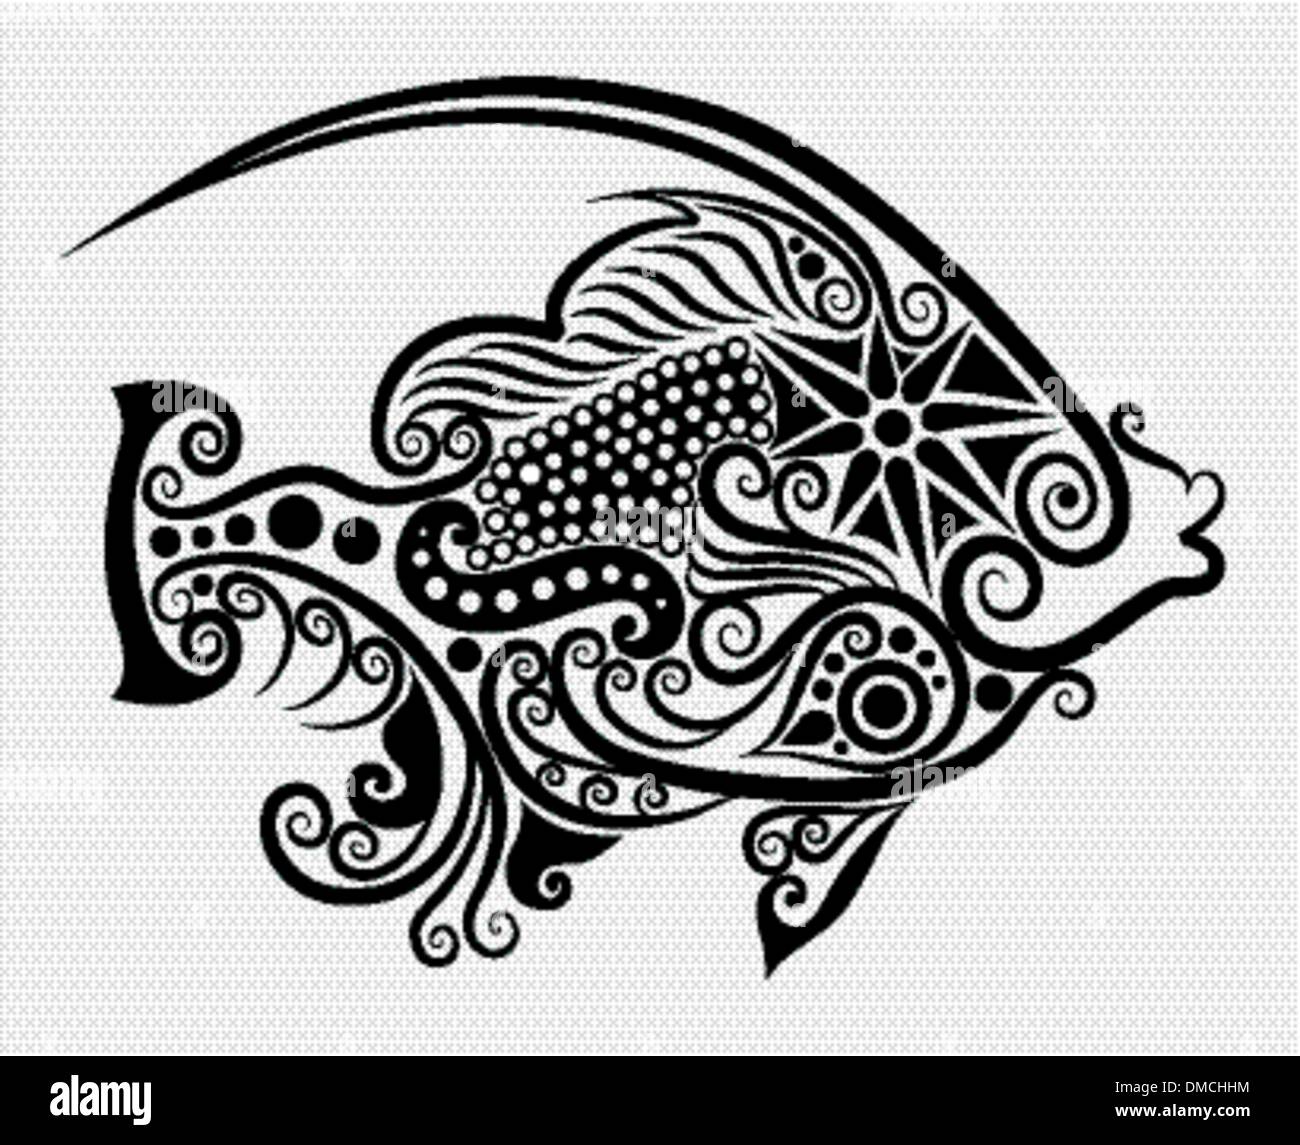 Fisch Zier Schwarzweiß Stockfotos und  bilder   Alamy